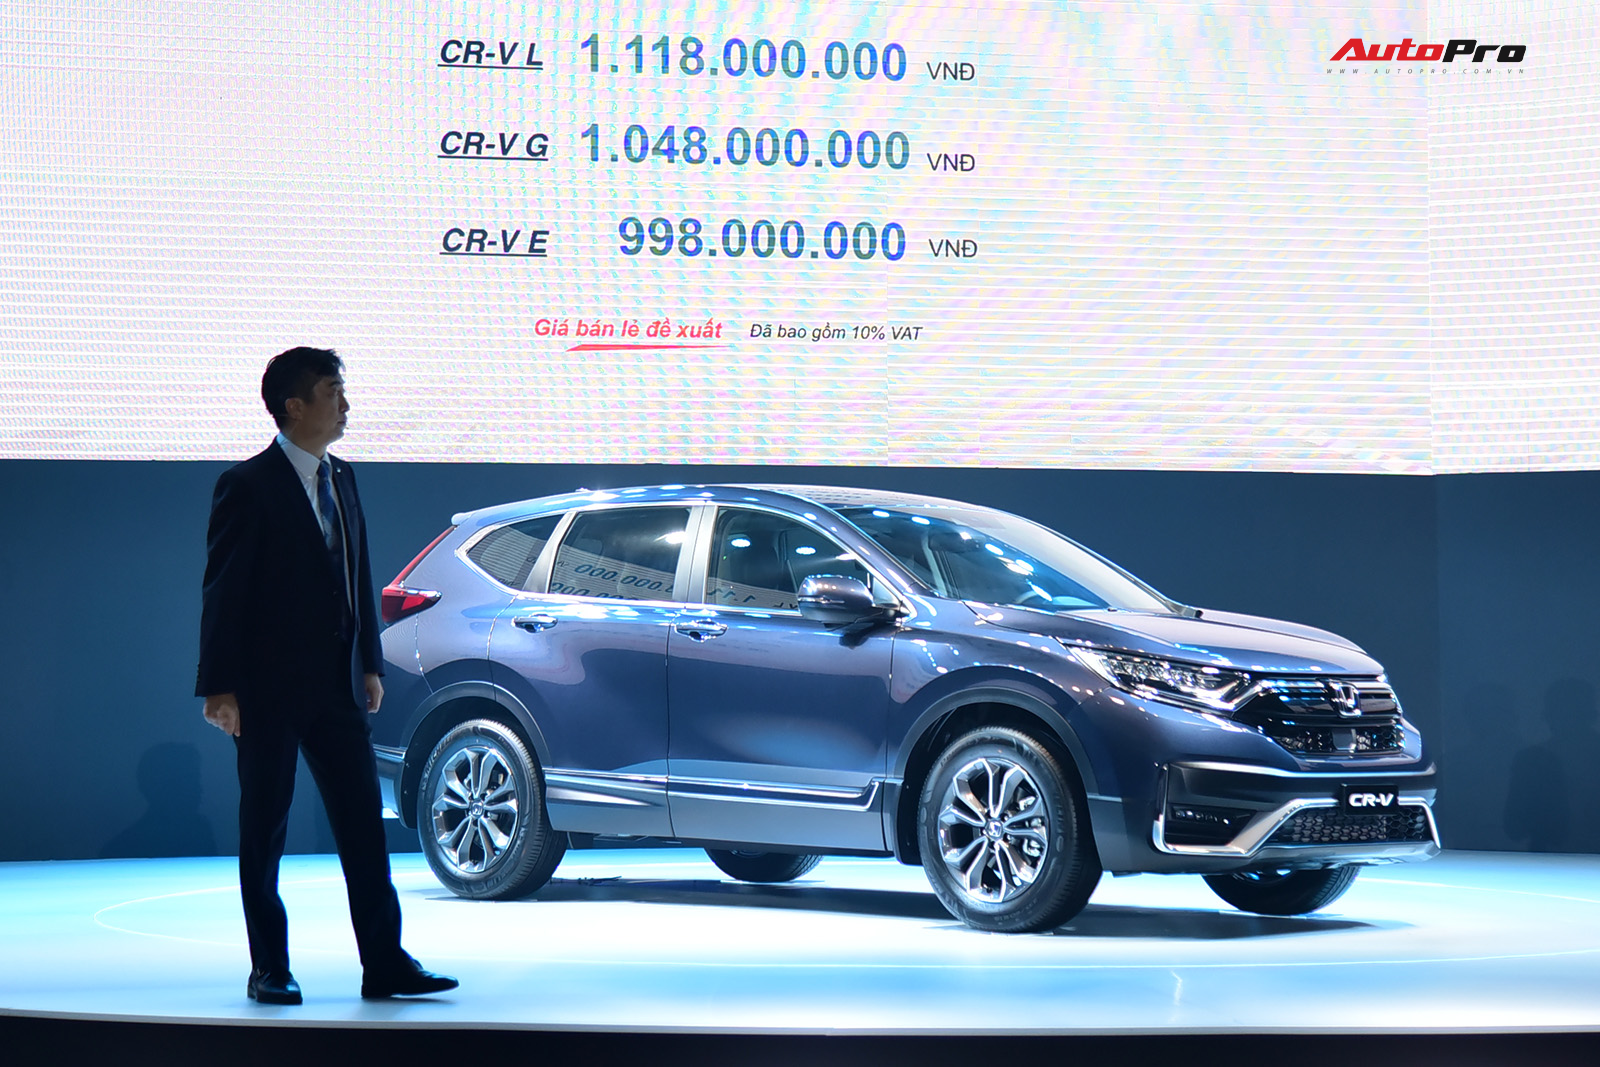 Hưởng ưu đãi 50% trước bạ, đây là giá lăn bánh của Honda CR-V 2020 vừa ra mắt - Ảnh 2.